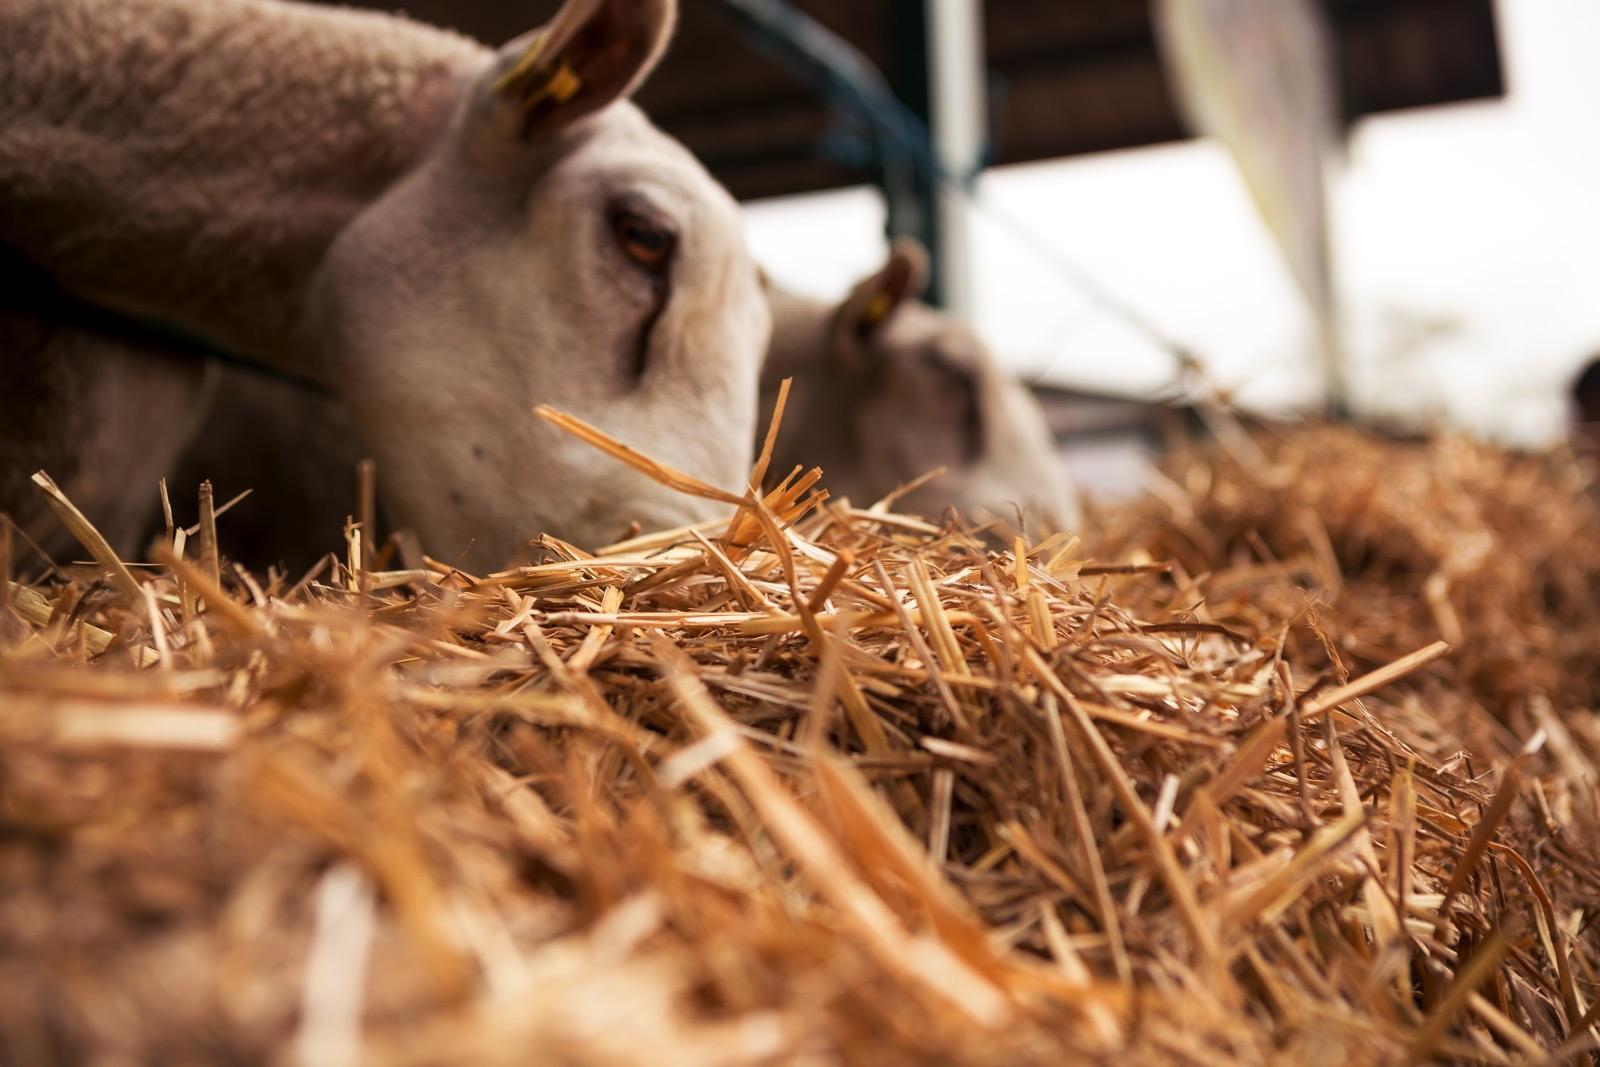 Perbeemd is een dierenartsenpraktijk die zich richt op landbouwhuisdieren, paarden, geiten, schapen en varkens. 